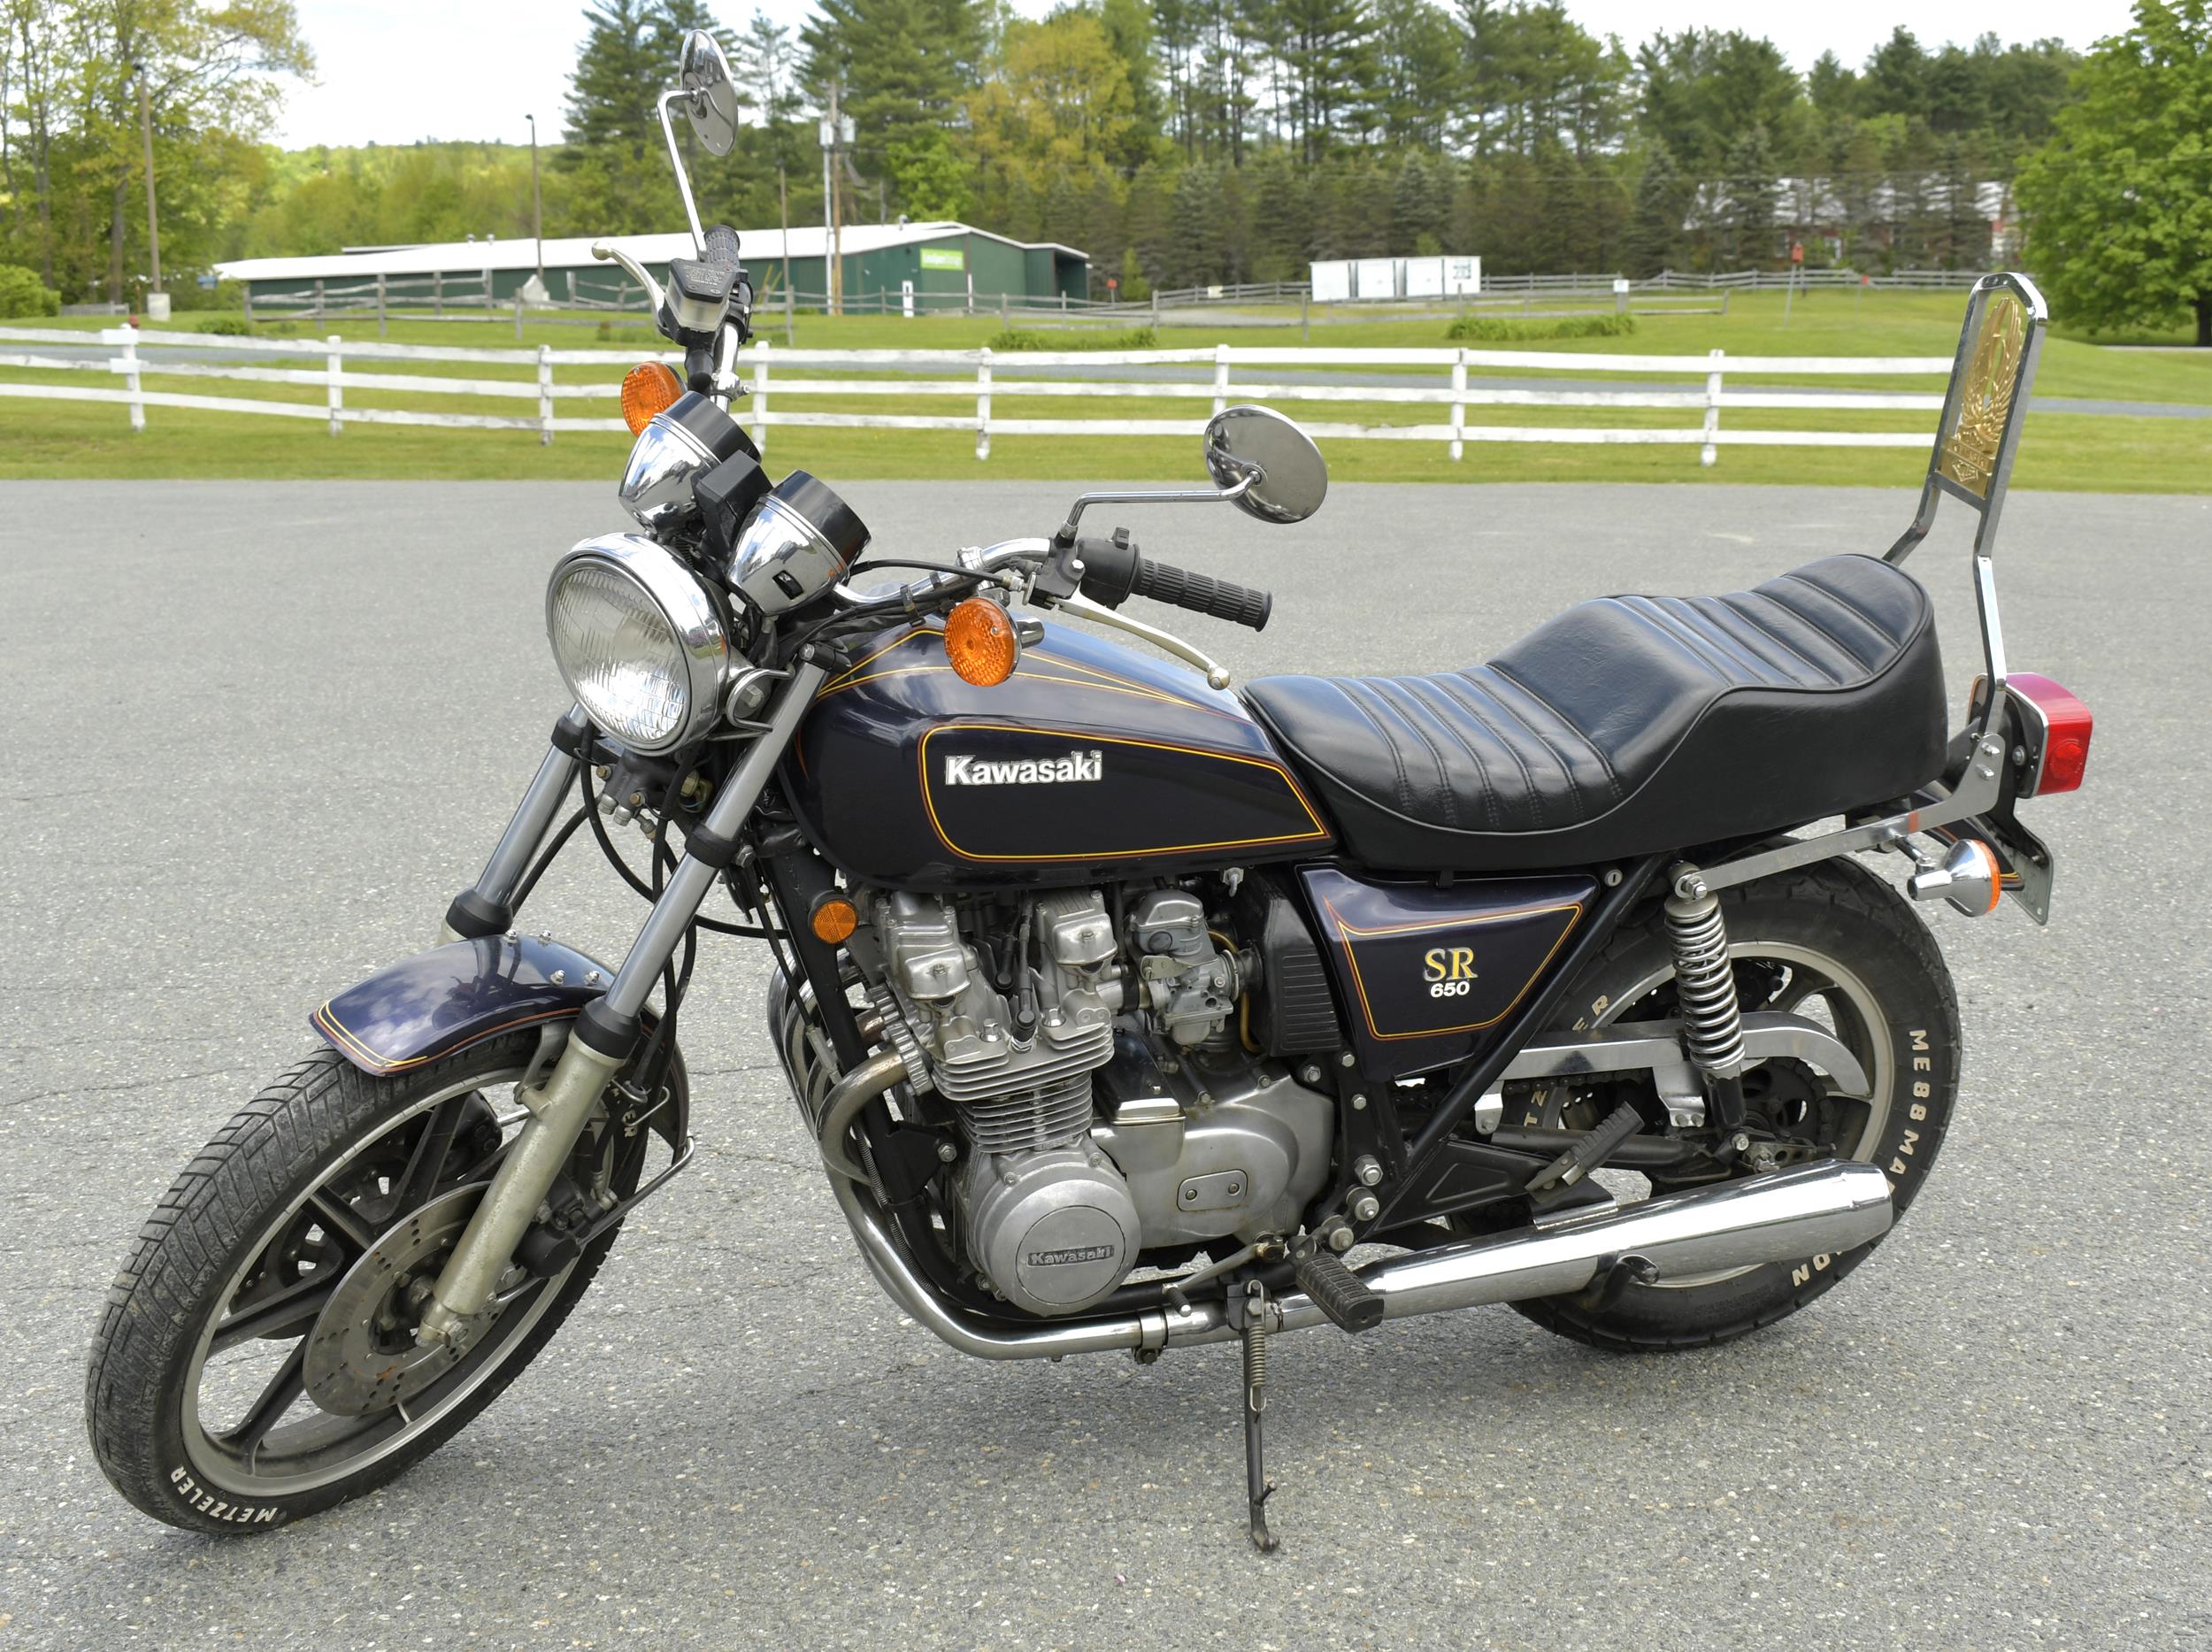 KAWASAKI 1979 KZ650 S R MOTORCYCLE  3aa923